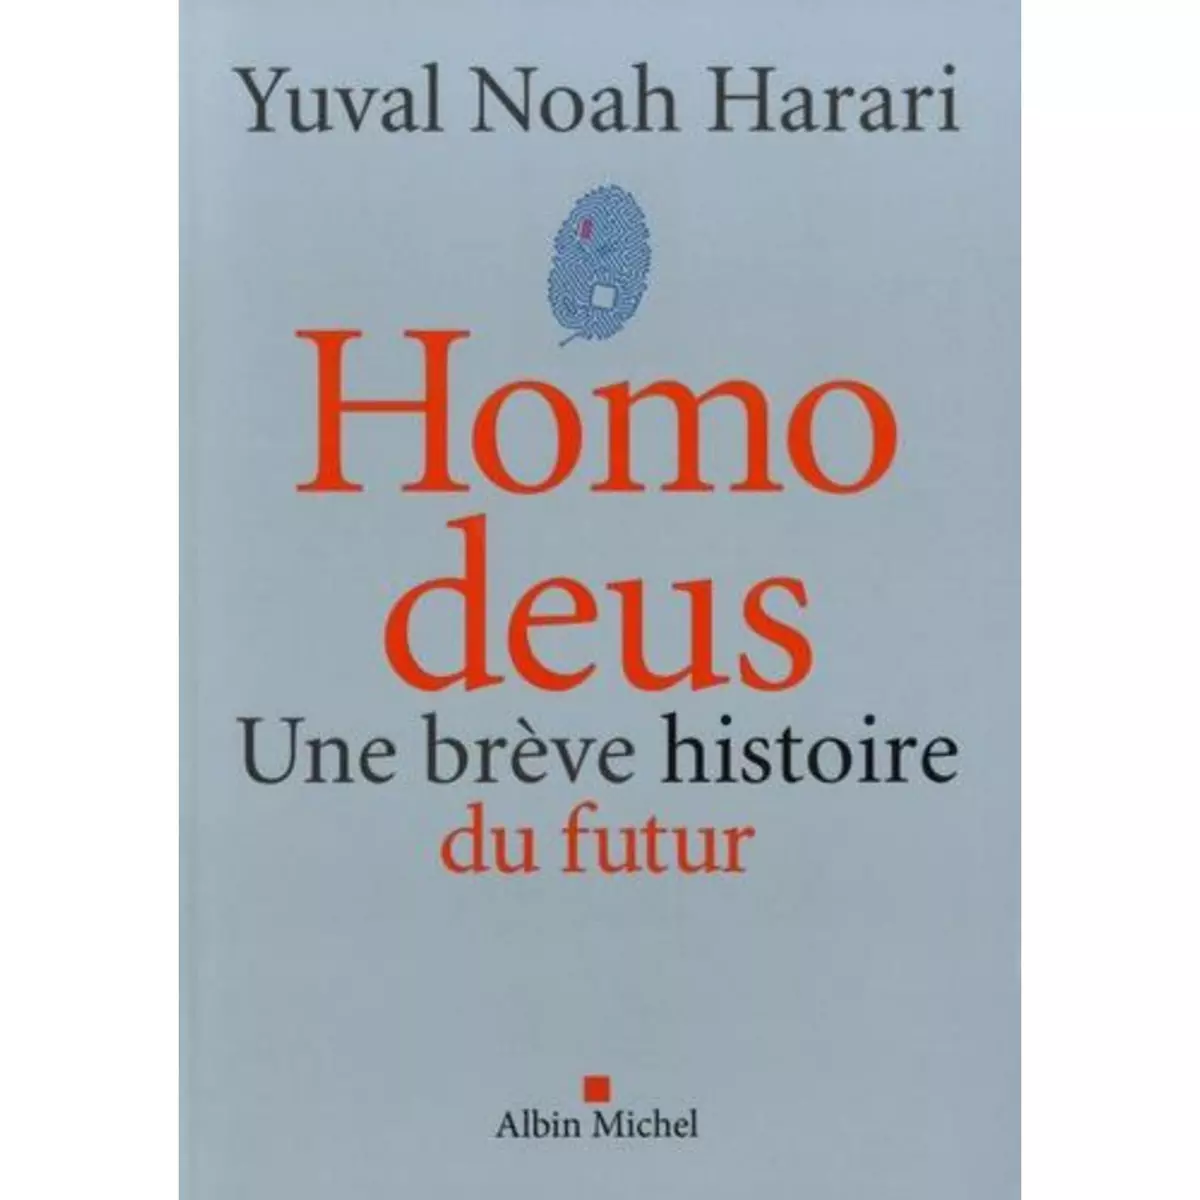  HOMO DEUS. UNE BREVE HISTOIRE DU FUTUR, Harari Yuval Noah